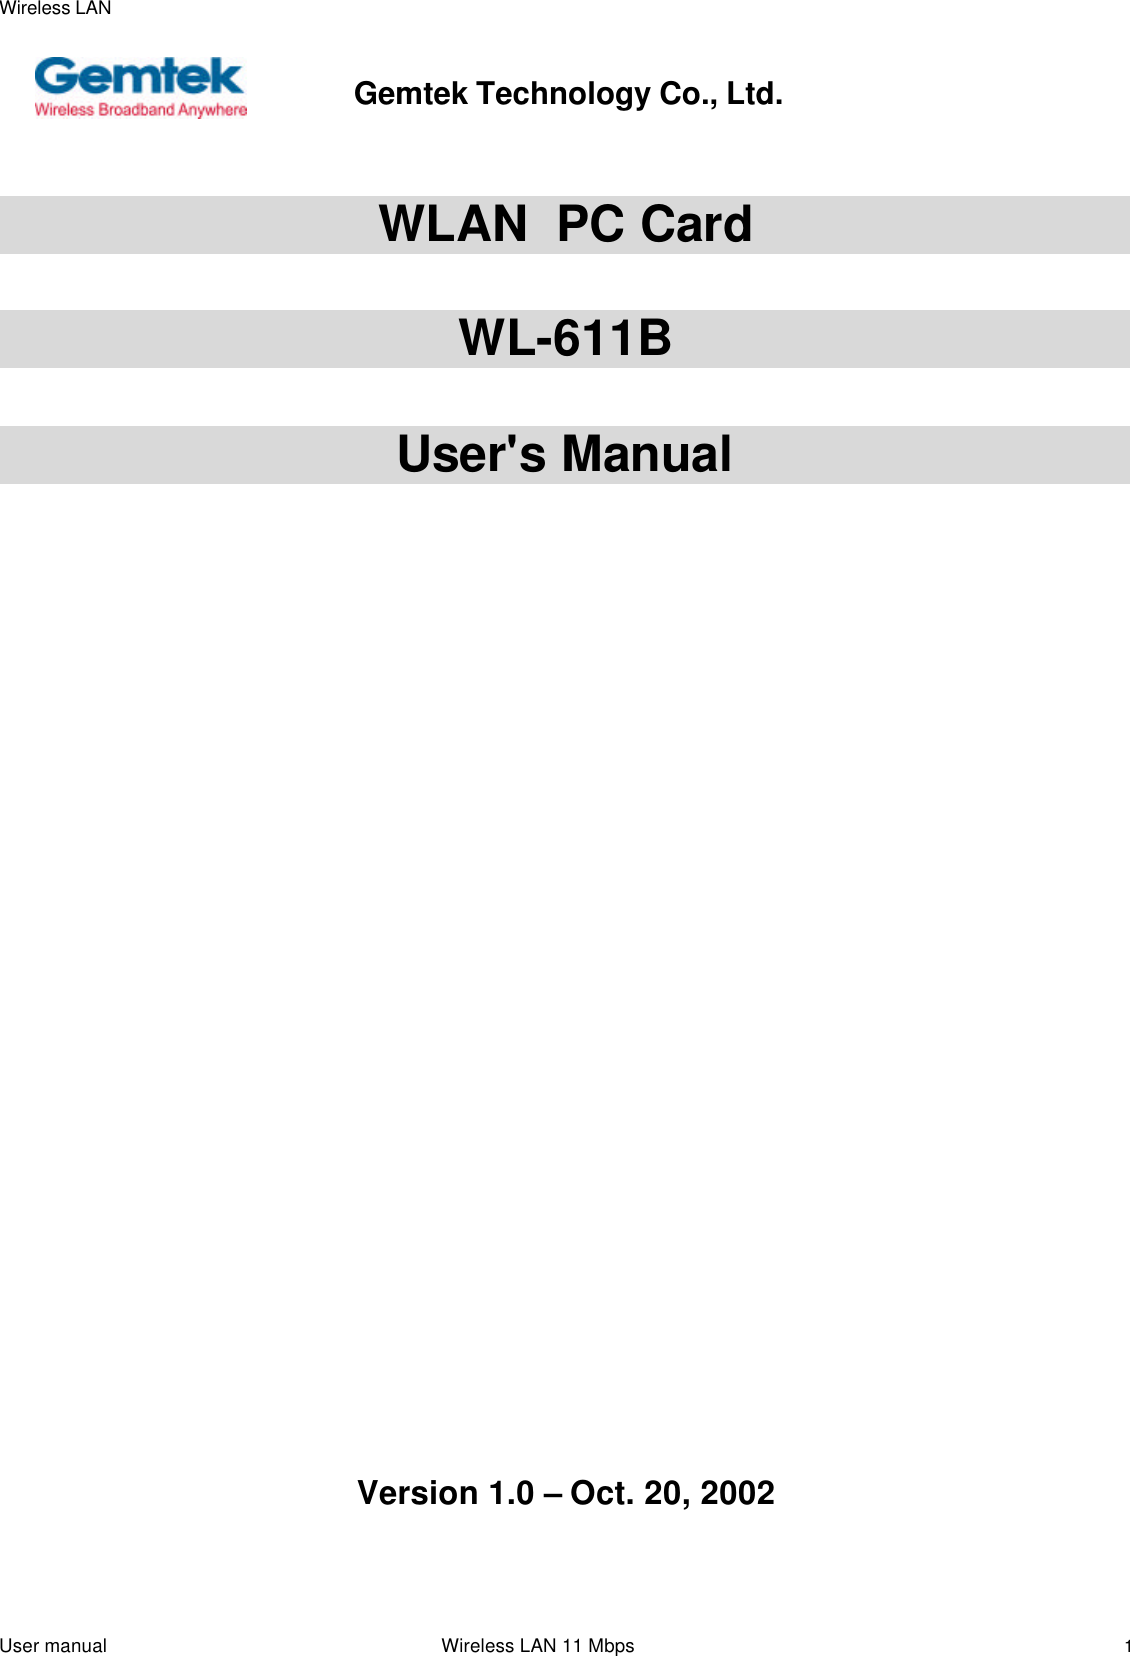 Wireless LANUser manual                                                                 Wireless LAN 11 Mbps1                         WLAN  PC CardWL-611BUser&apos;s Manual   Version 1.0 – Oct. 20, 2002Gemtek Technology Co., Ltd.